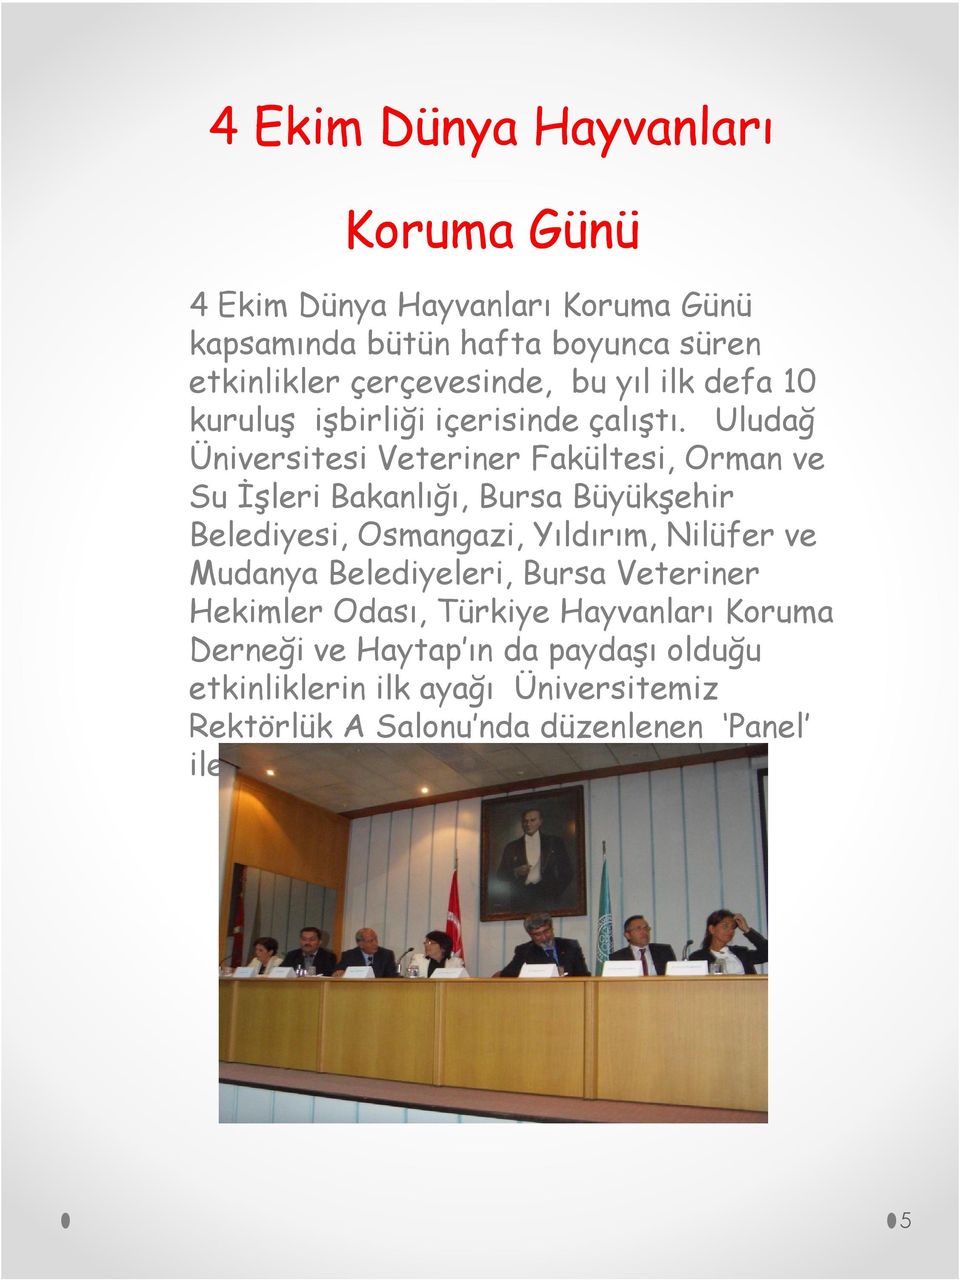 Uludağ Üniversitesi Veteriner Fakültesi, Orman ve Su İşleri Bakanlığı, Bursa Büyükşehir Belediyesi, Osmangazi, Yıldırım, Nilüfer ve